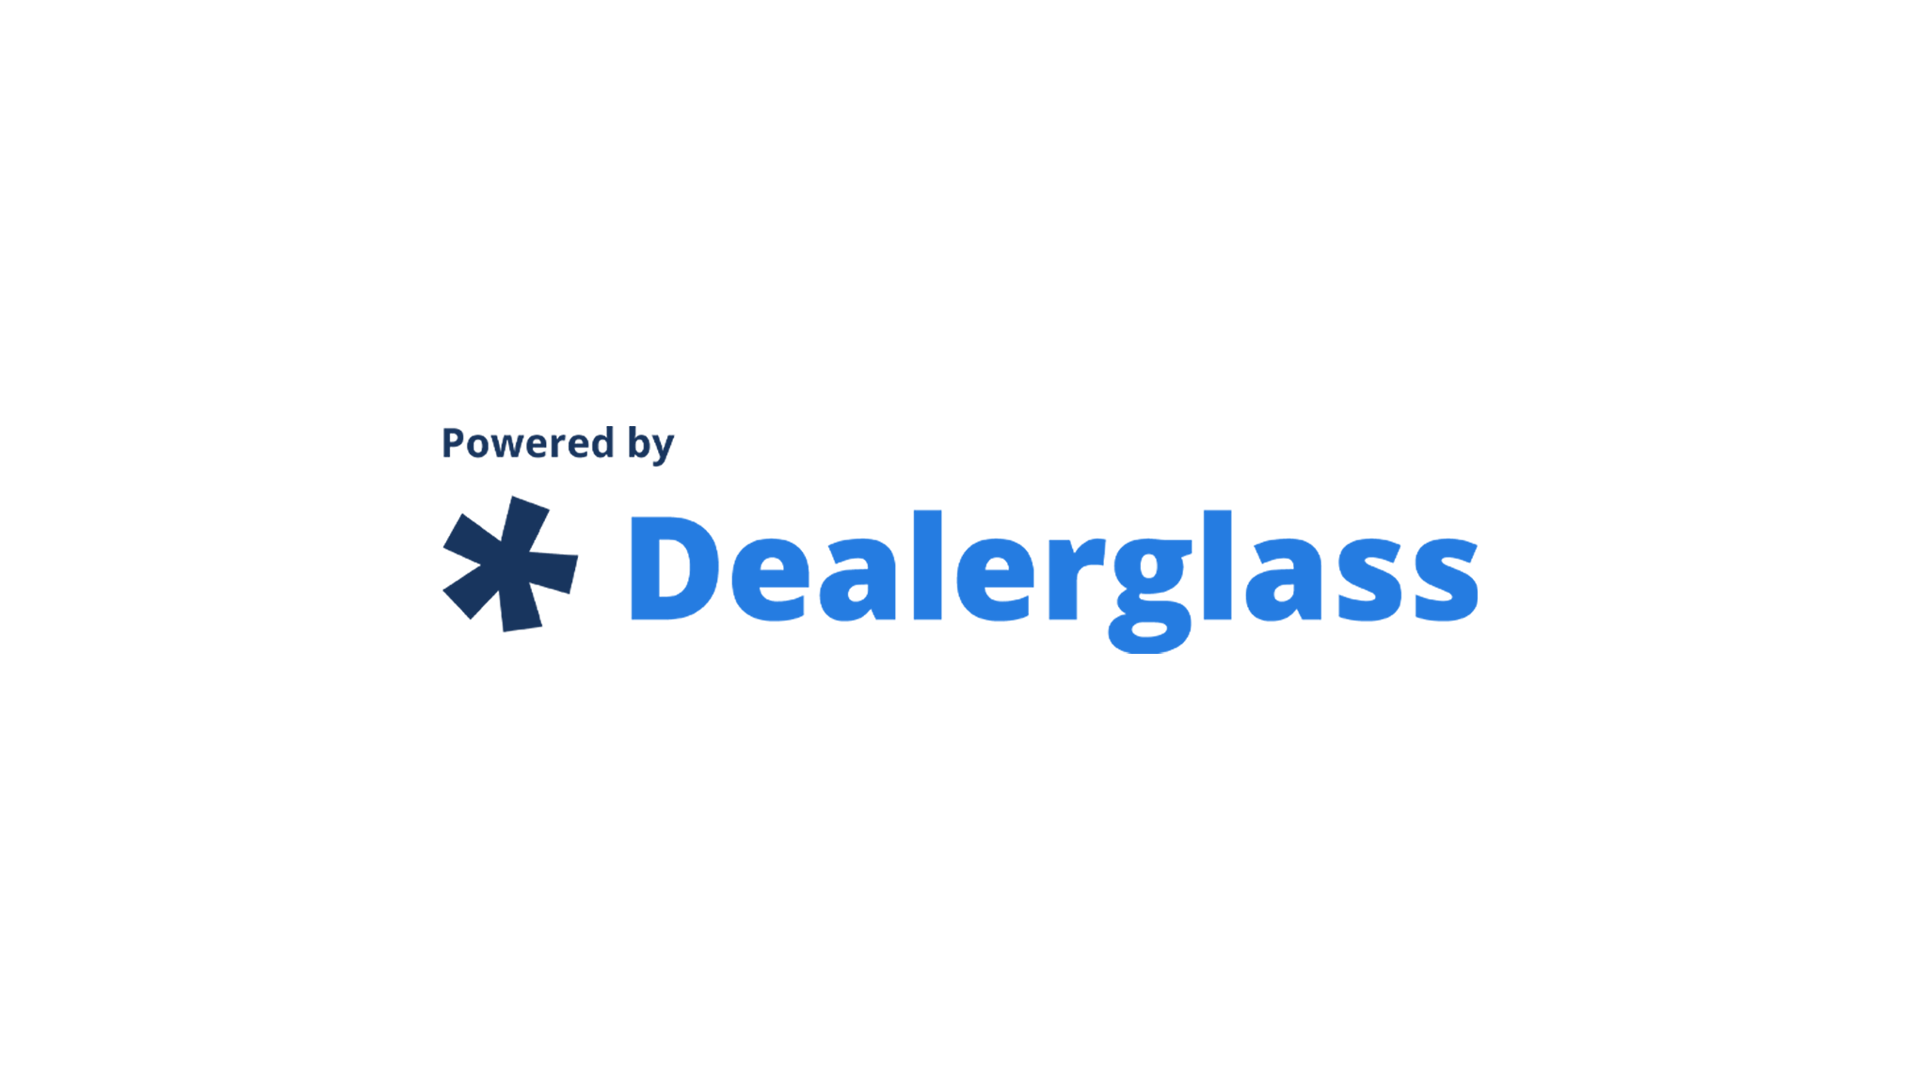 lexus-dealer-glass-logo